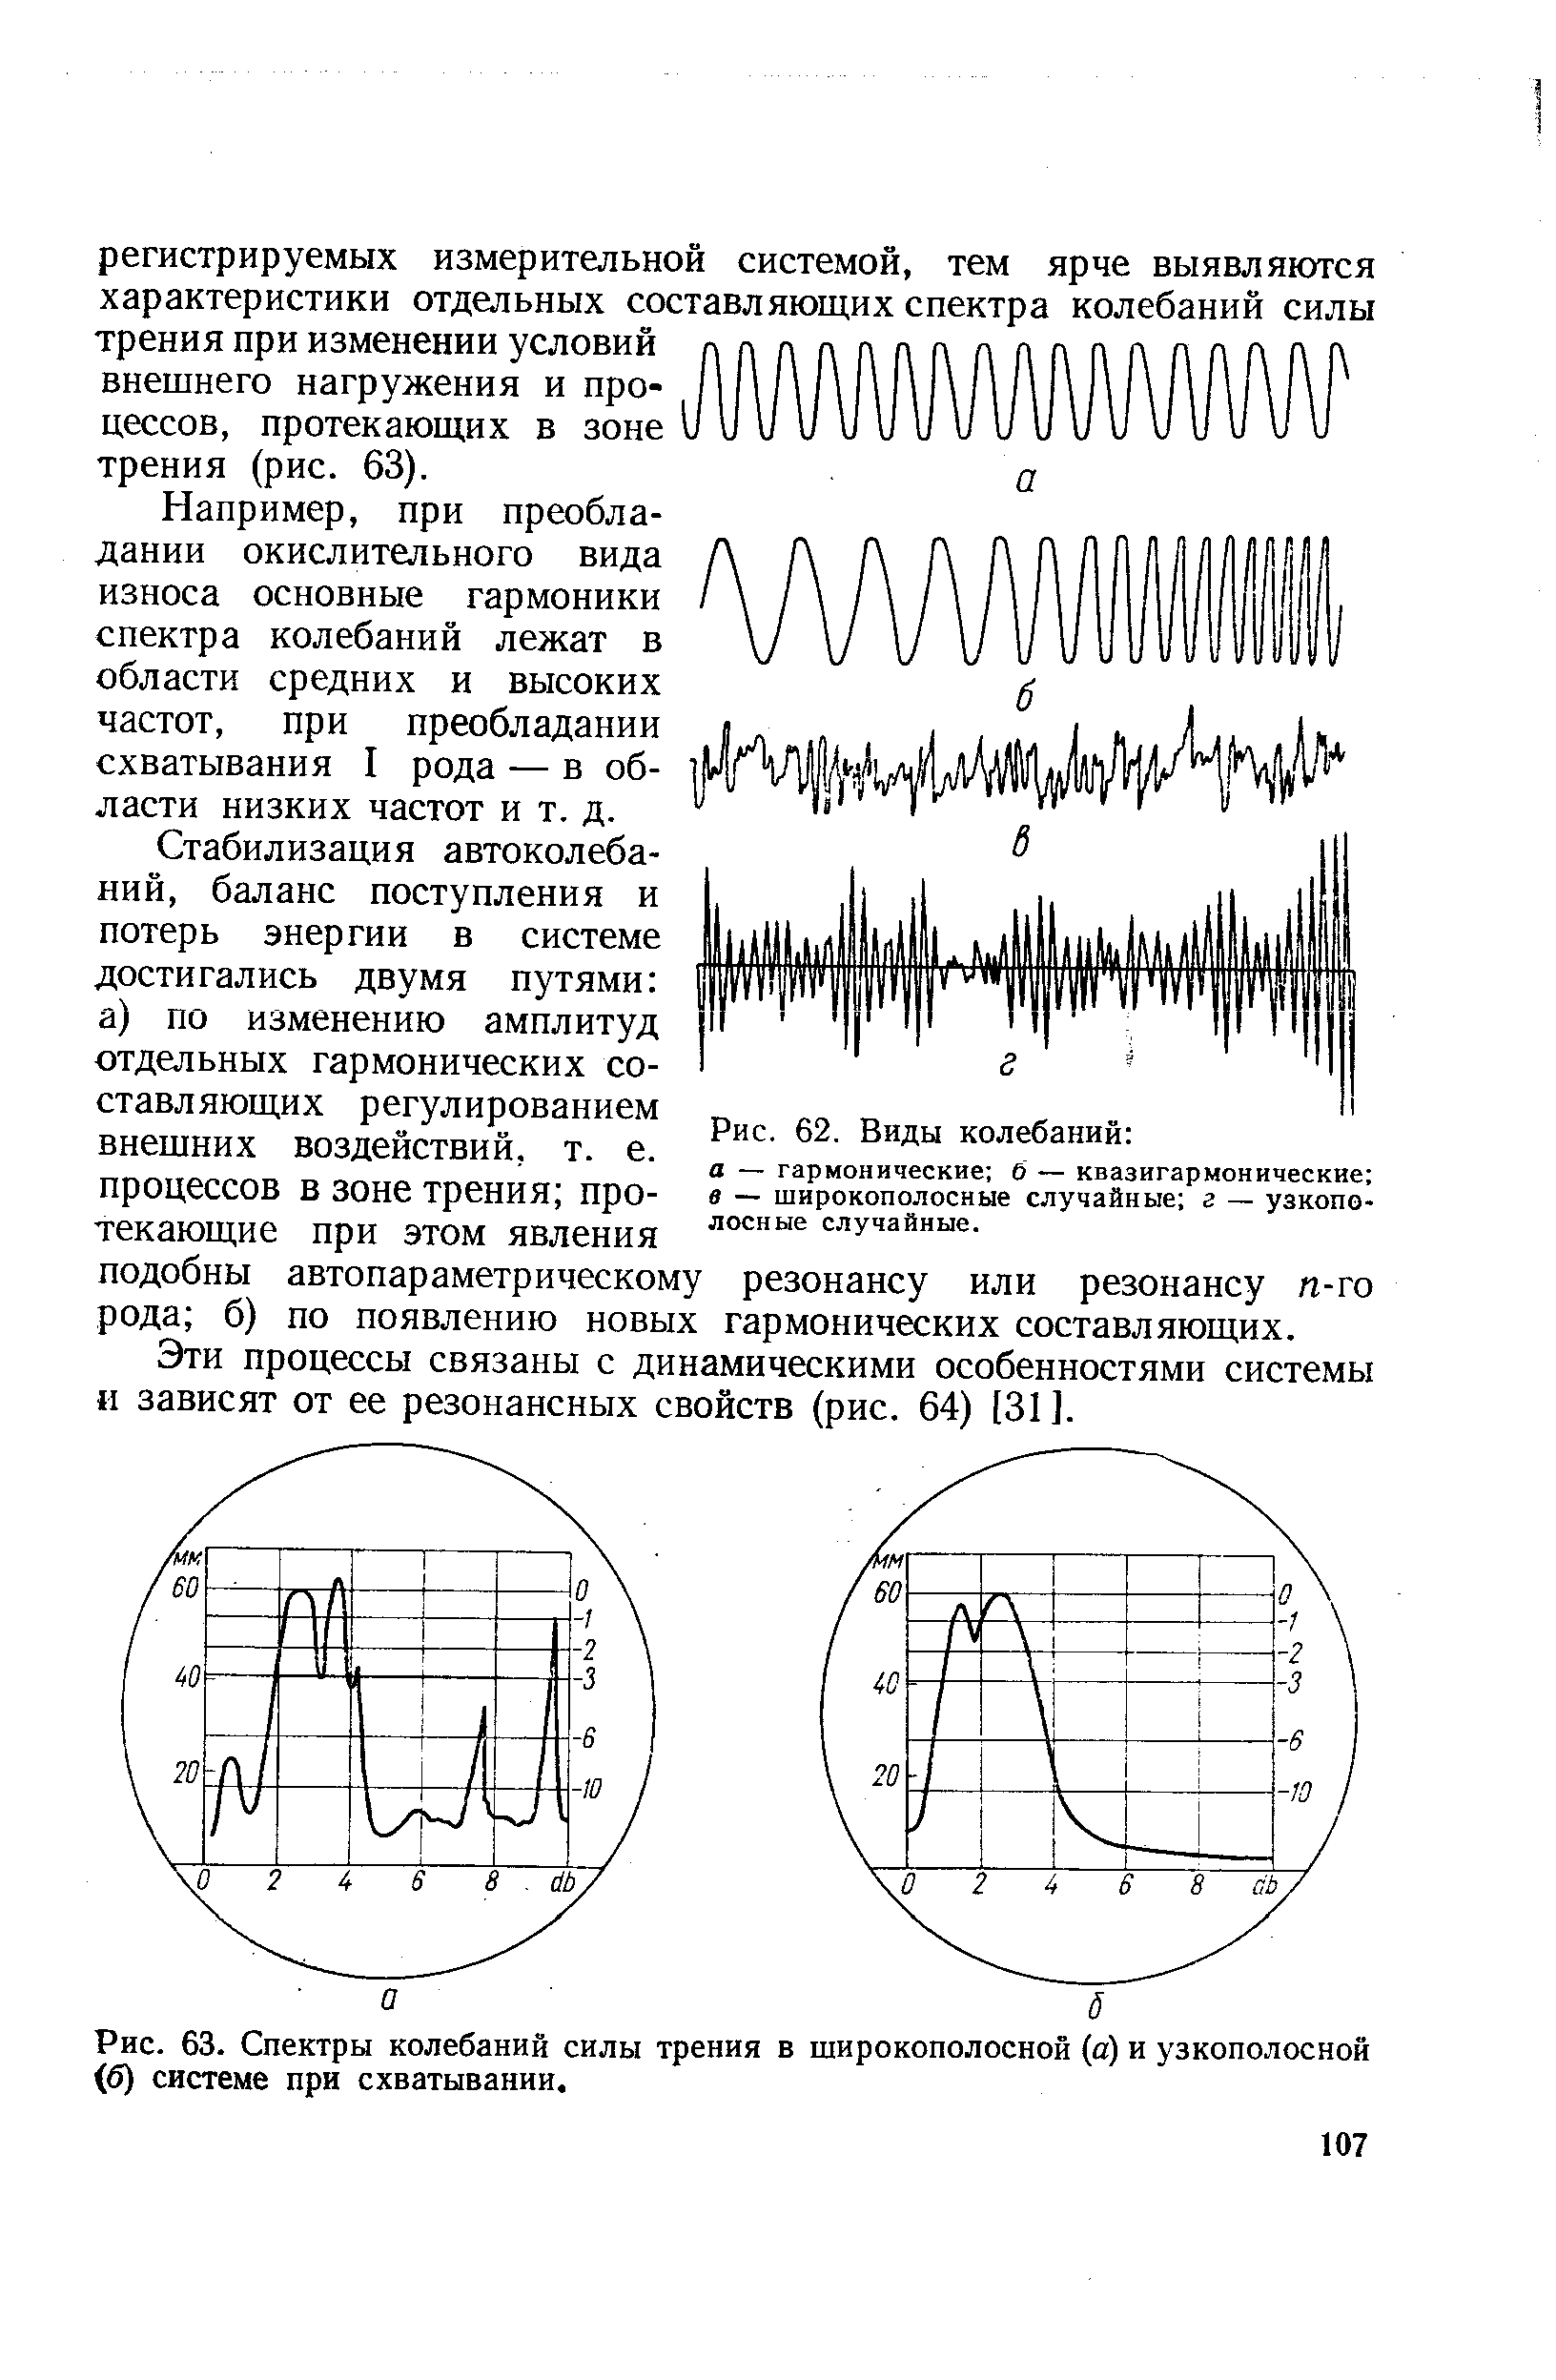 Рис. 63. Спектры колебаний силы трения в широкополосной (а) и узкополосной (б) системе при схватывании.
